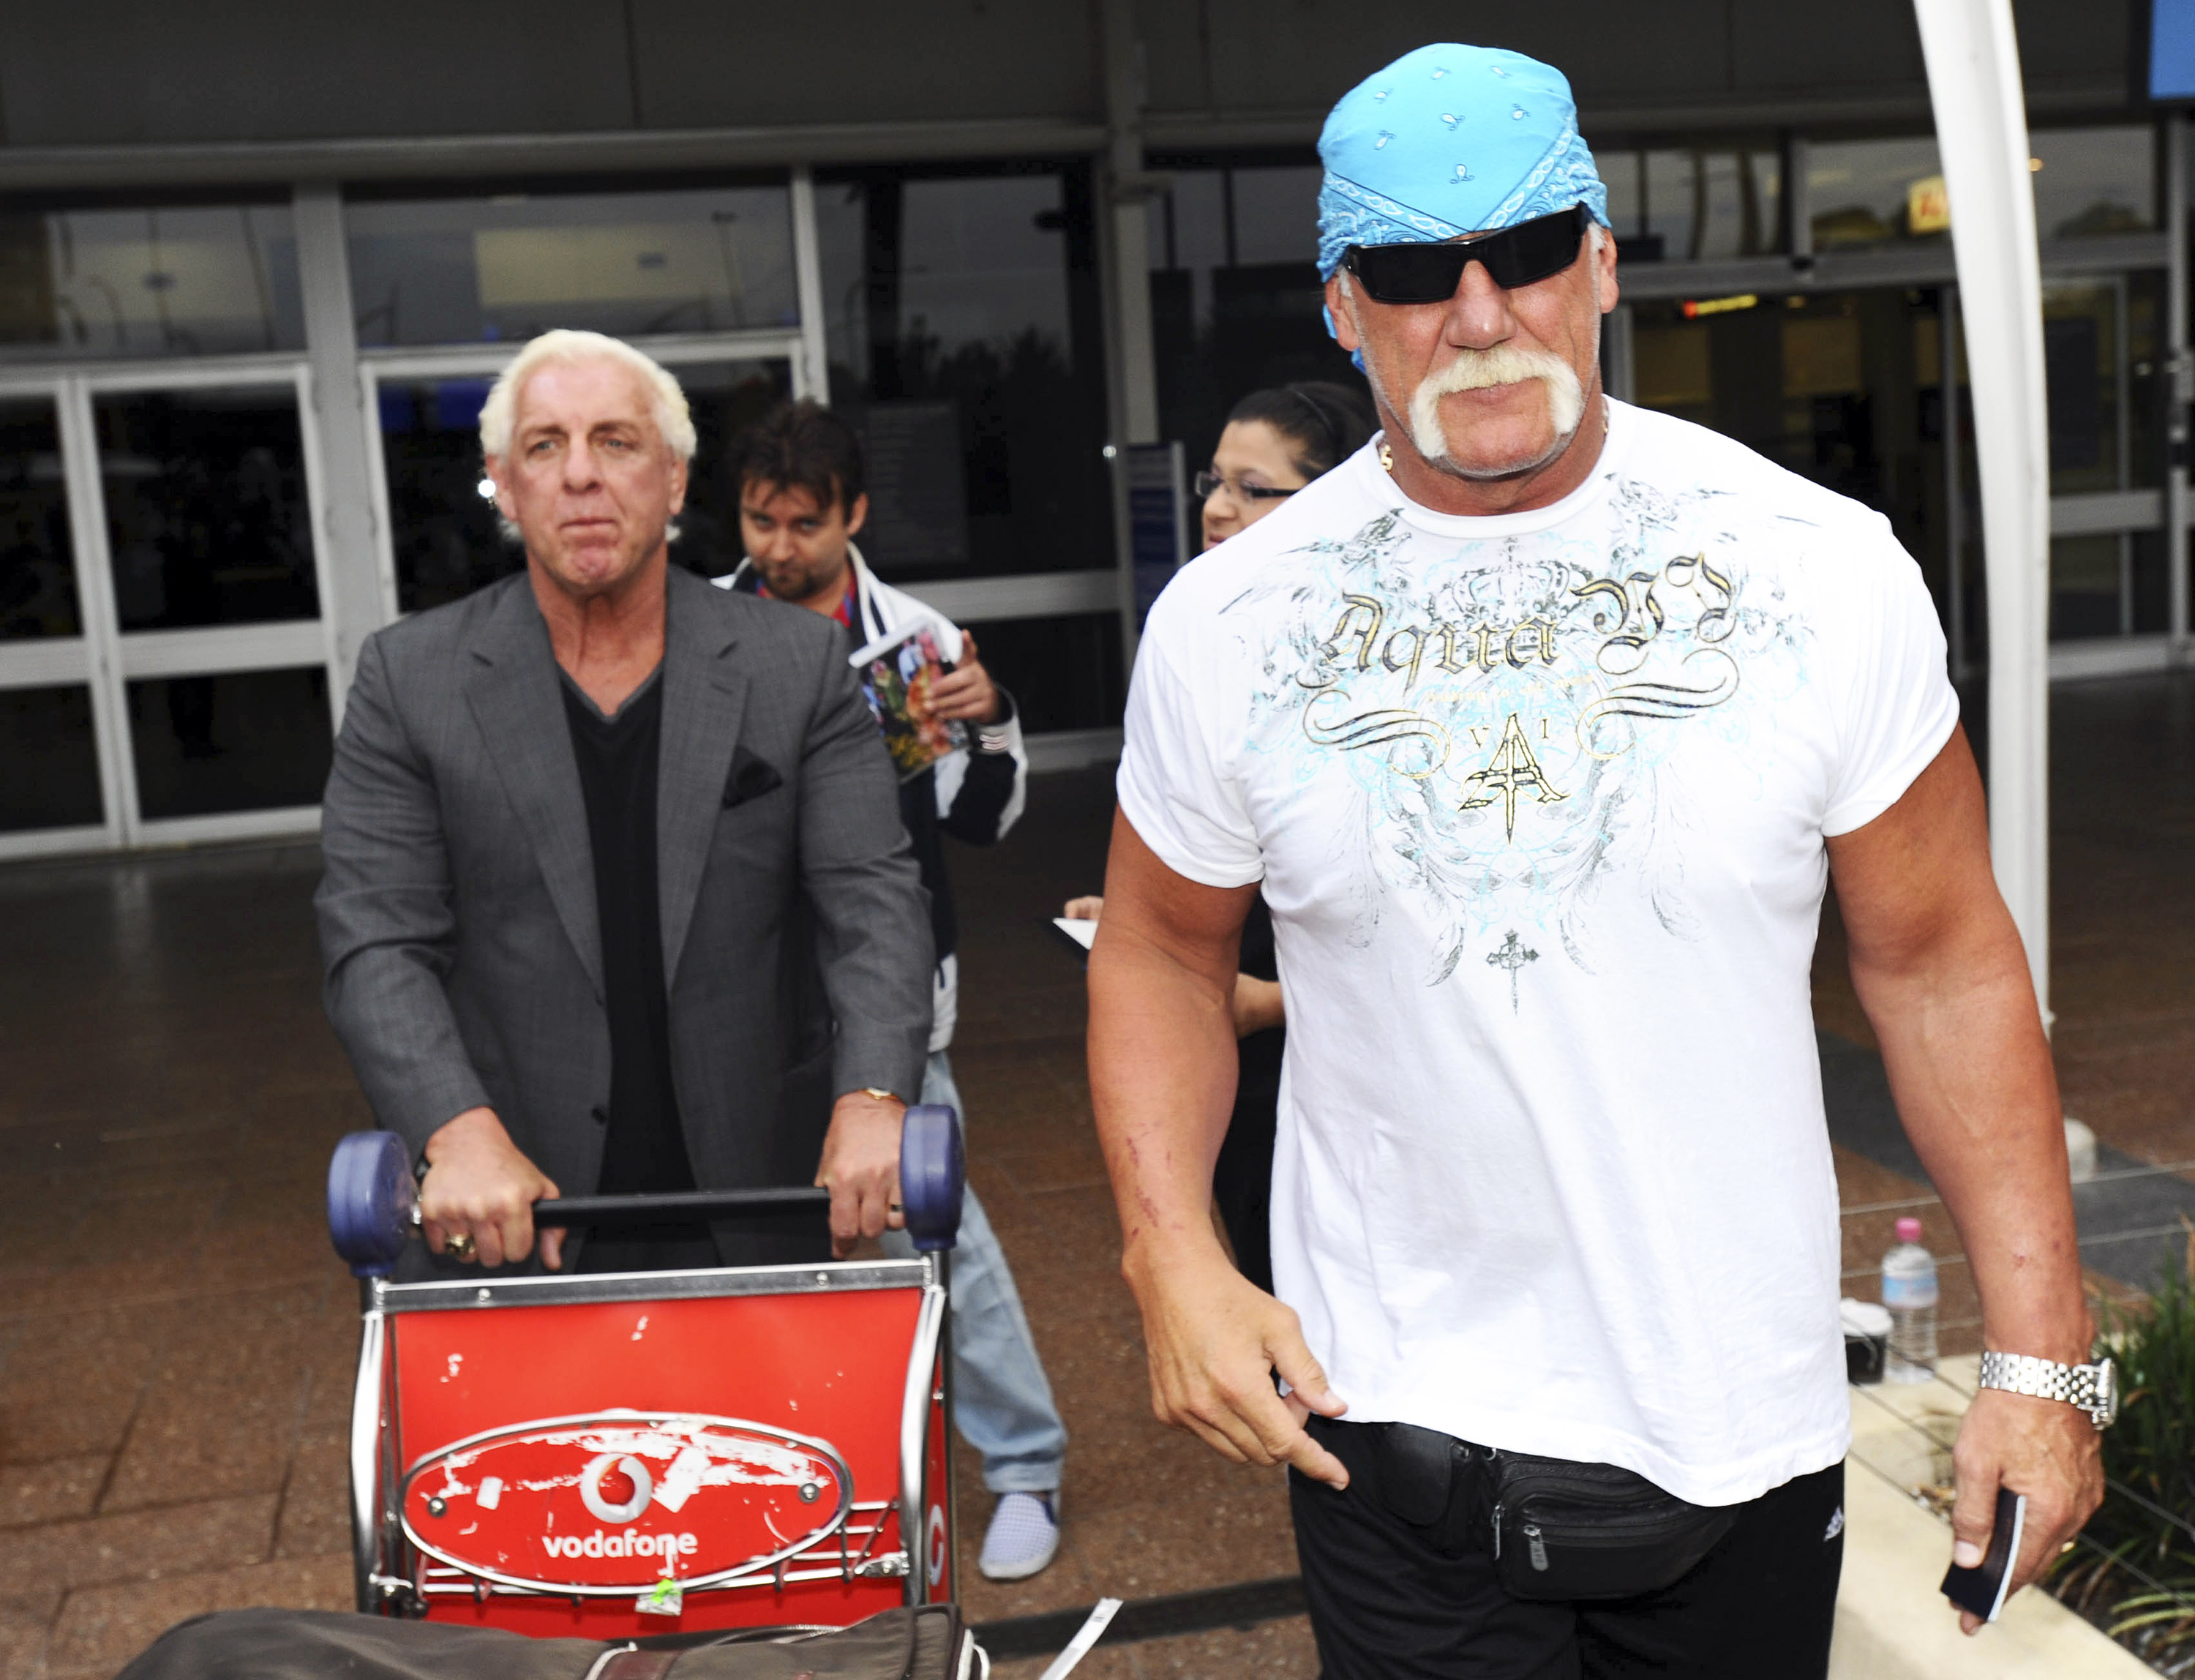 Ric Flair & Hulk Hogan